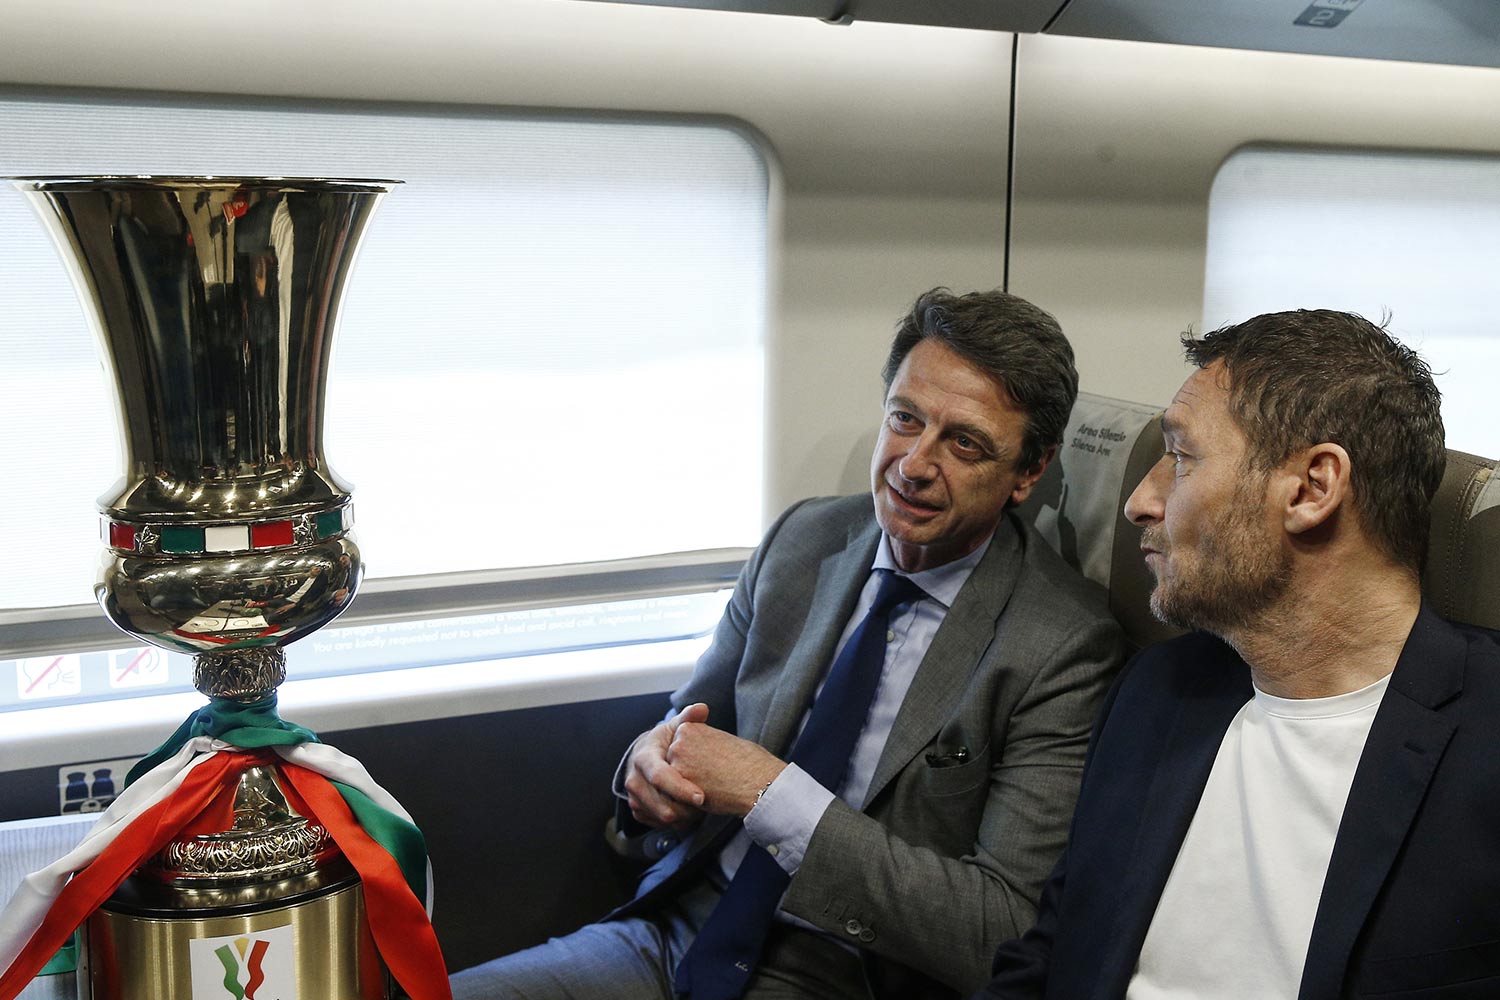 Luigi Corradi e Francesco Totti a bordo del treno Frecciarossa in occasione della presentazione della finale di Coppa Italia Frecciarossa 2022 alla stazione di Roma Termini